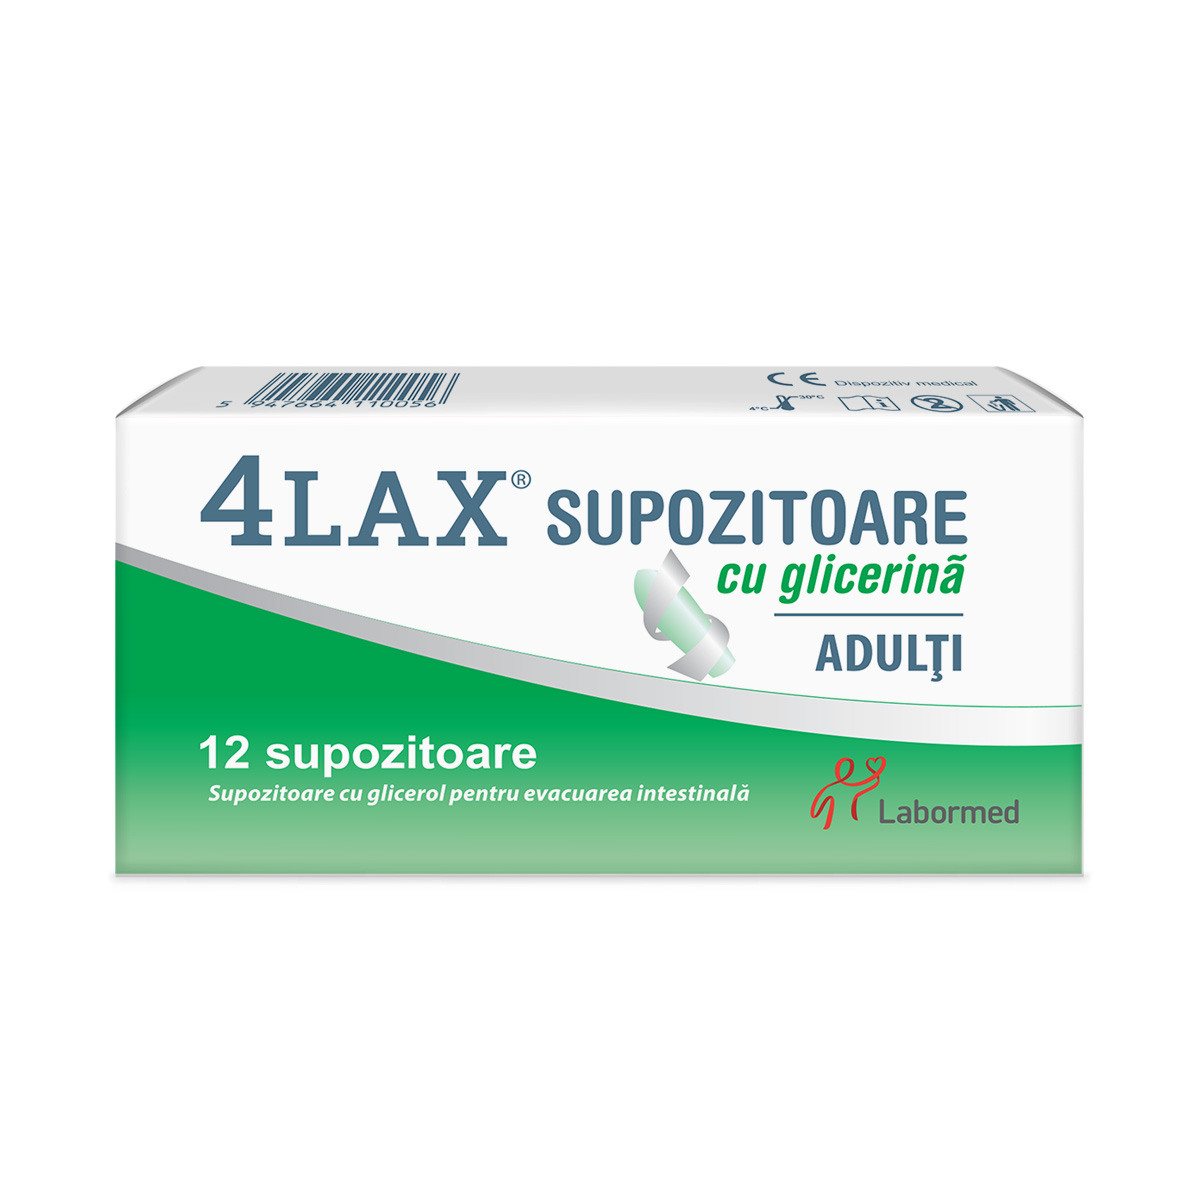 4Lax Supozitoare cu glicerina pentru adulti, 12 bucati, Labormed